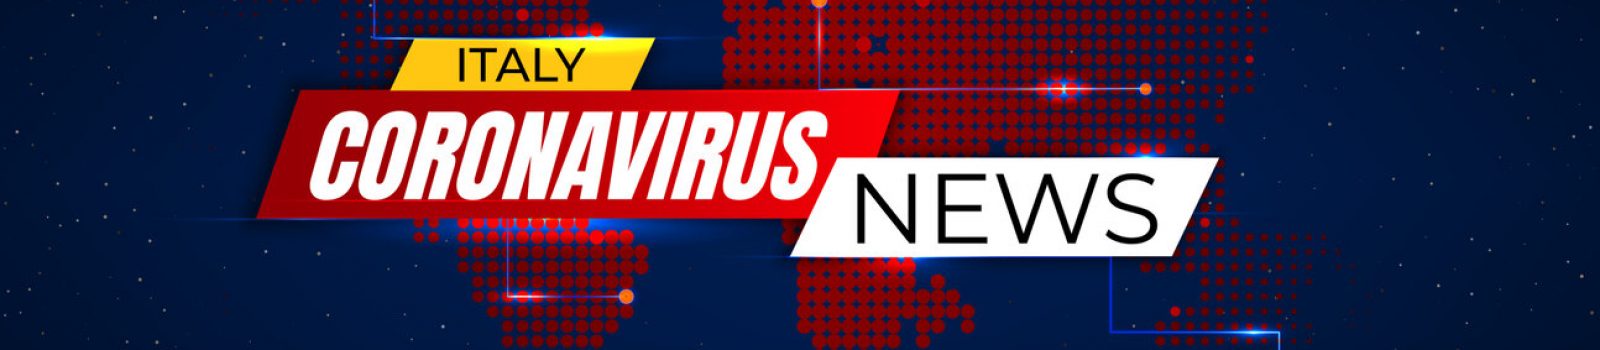 Italy Coronavirus News